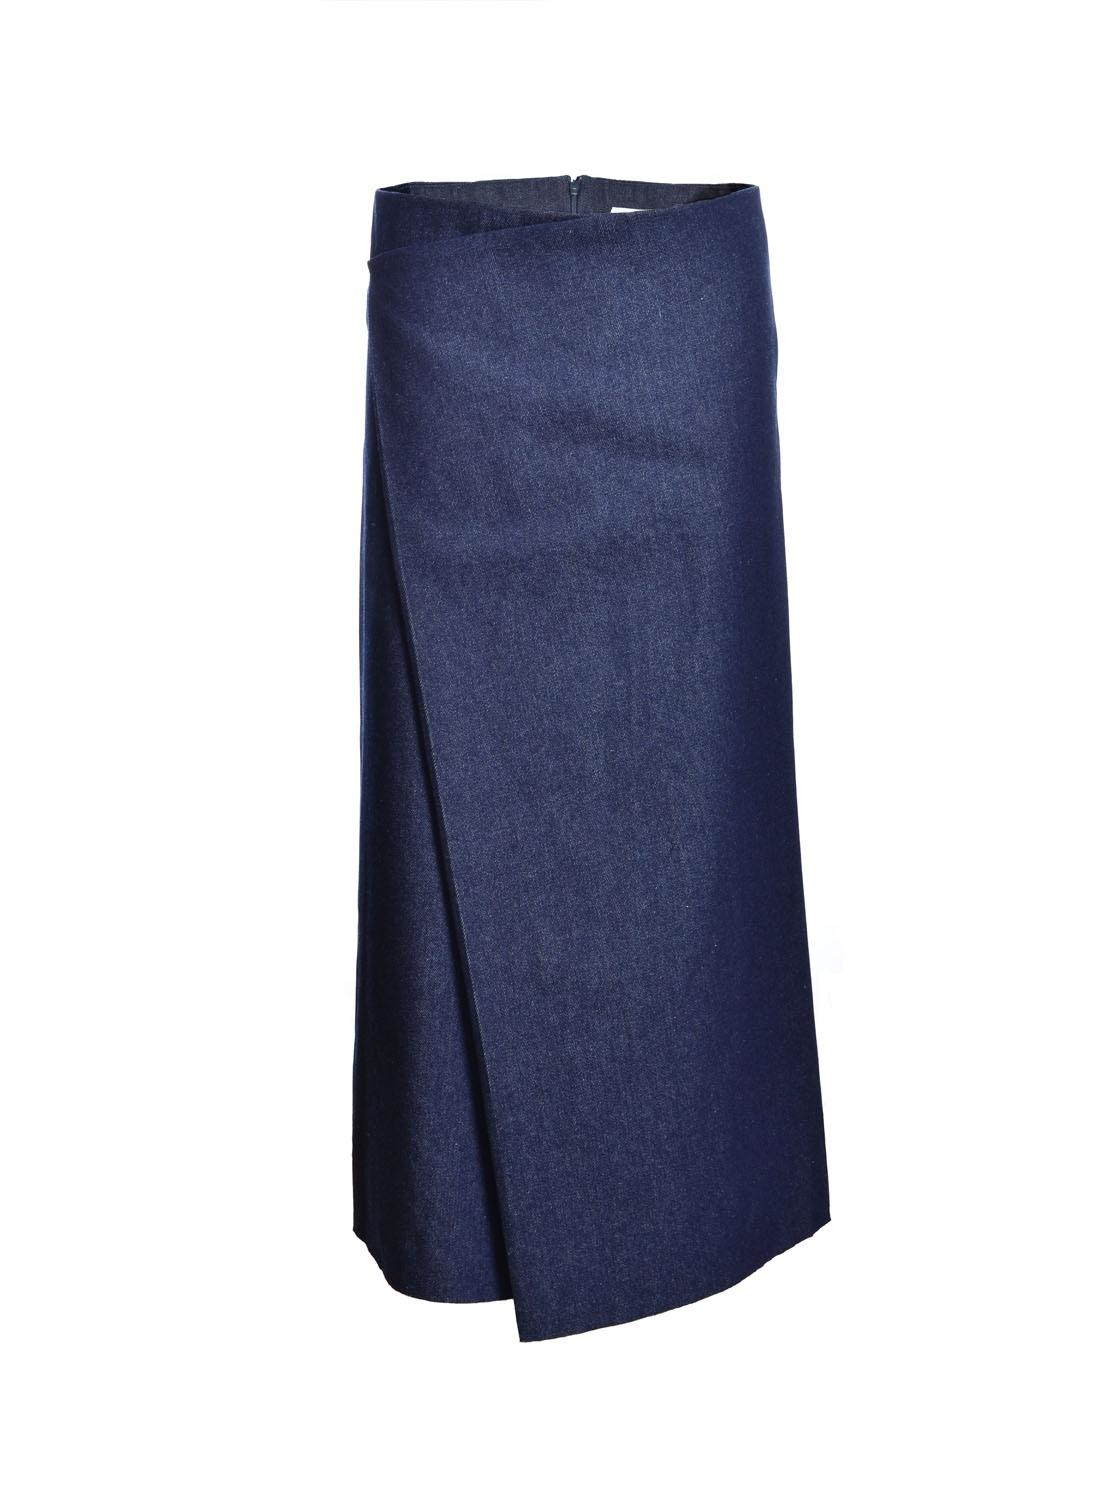 Charlie may Asymmetric Indigo Denim Skirt - Last One in Blue | Lyst